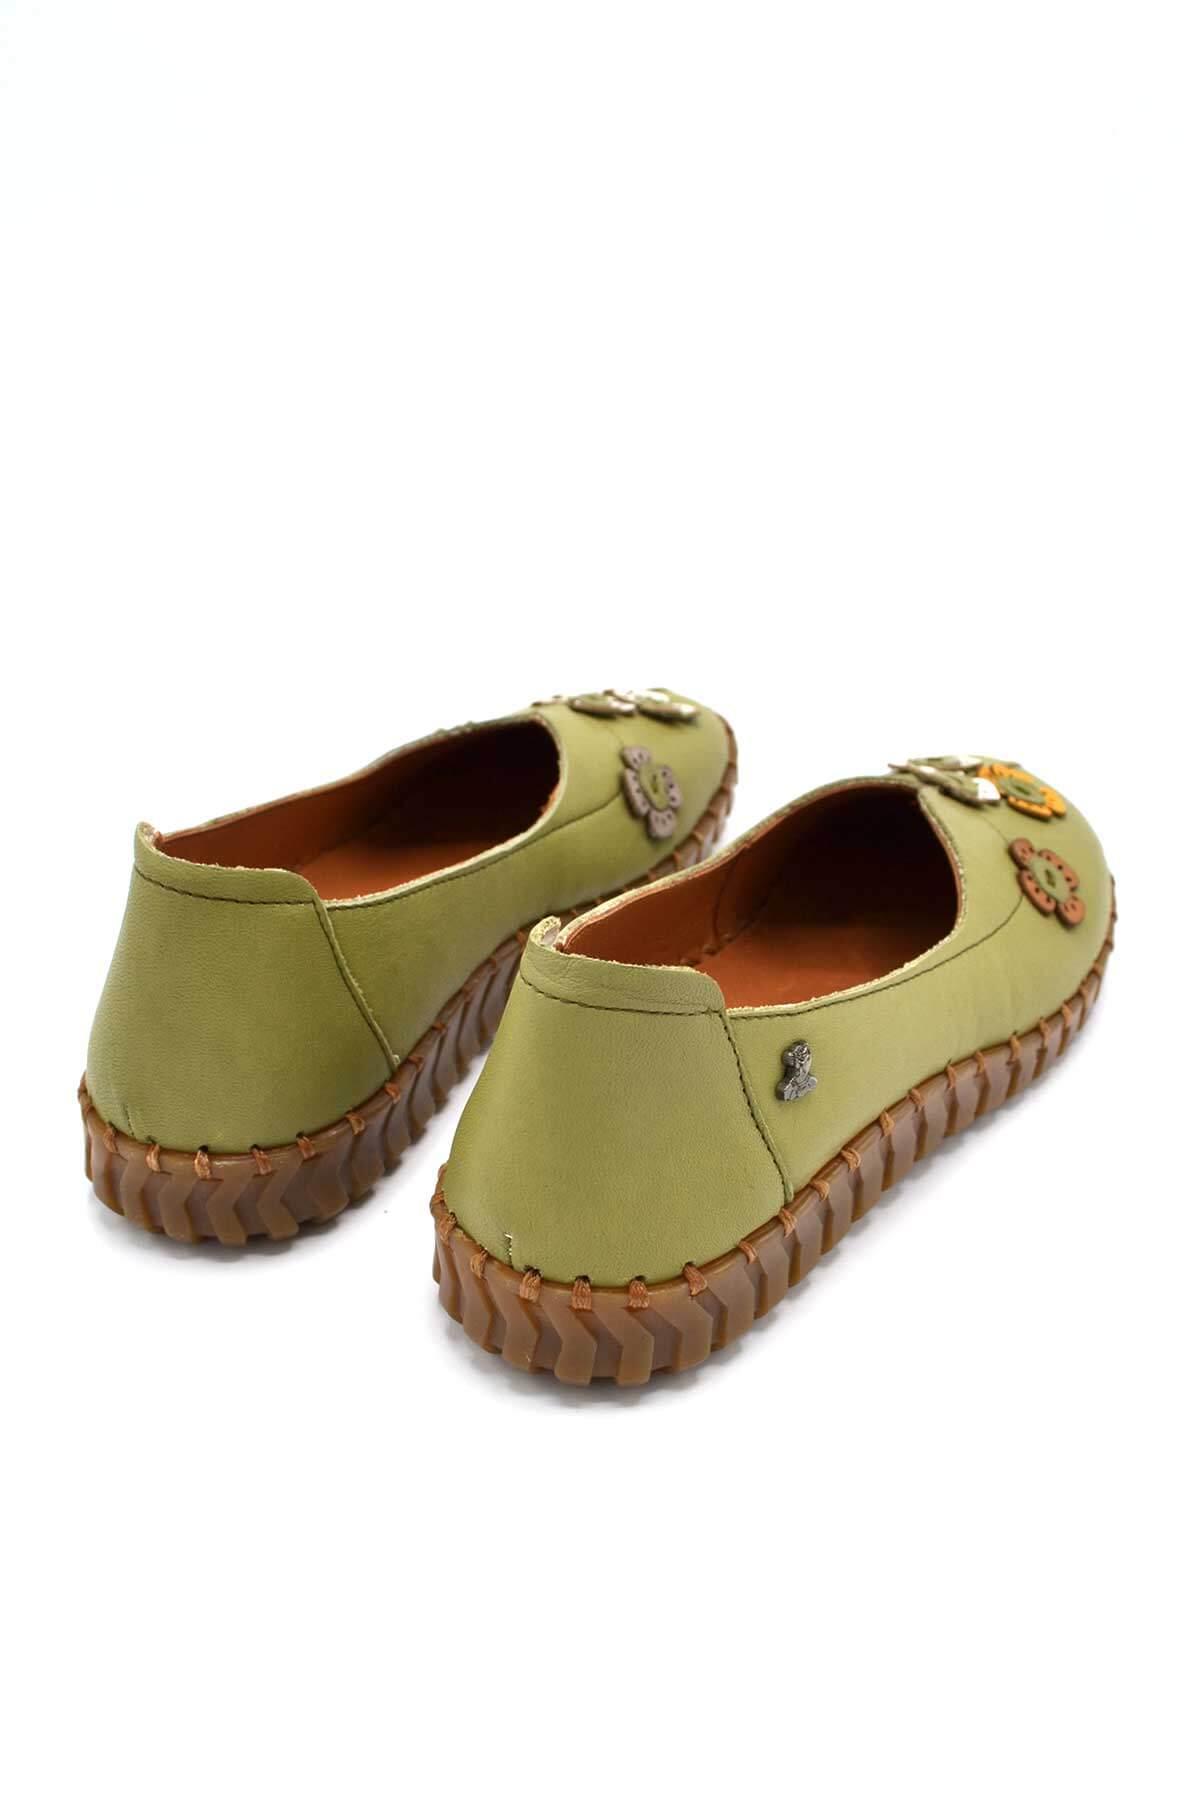 Kadın Comfort Deri Ayakkabı Yeşil 2010711Y - Thumbnail